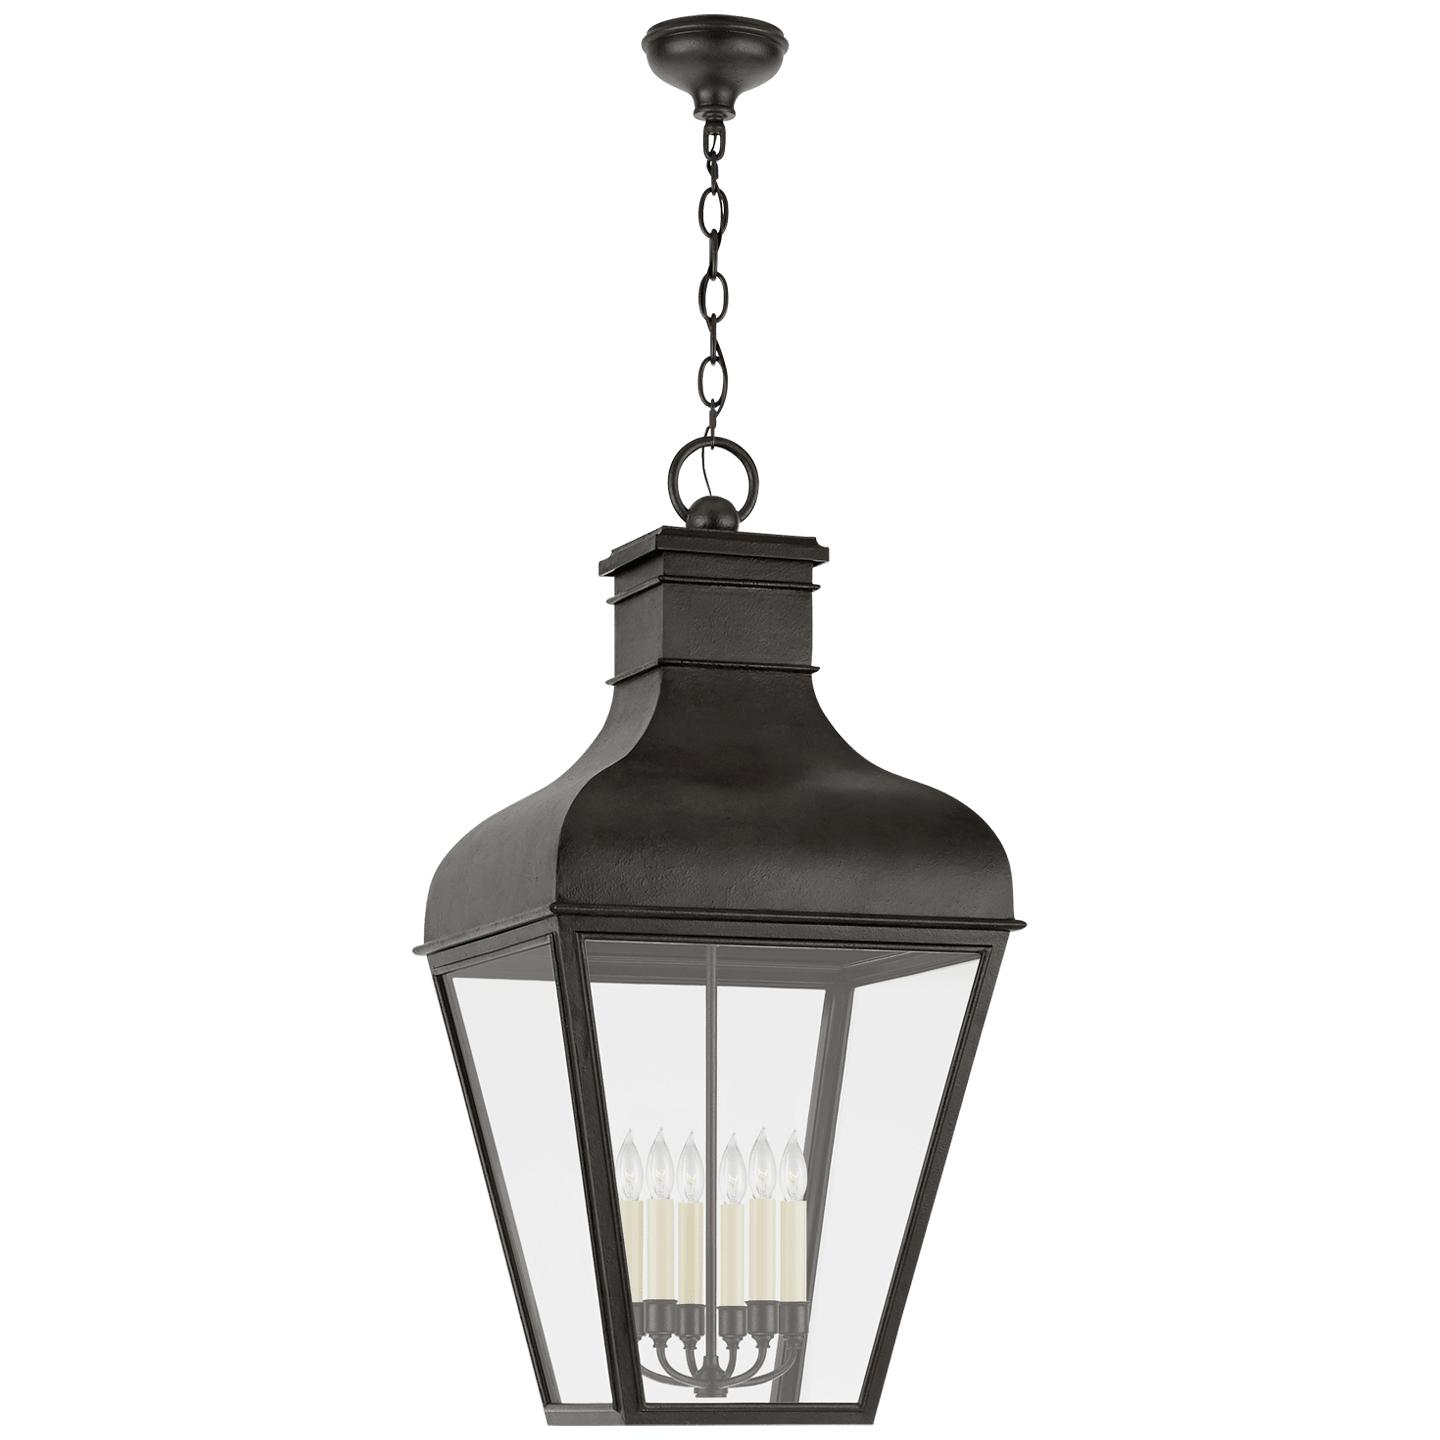 Купить Подвесной светильник Fremont Grande Hanging Lantern в интернет-магазине roooms.ru